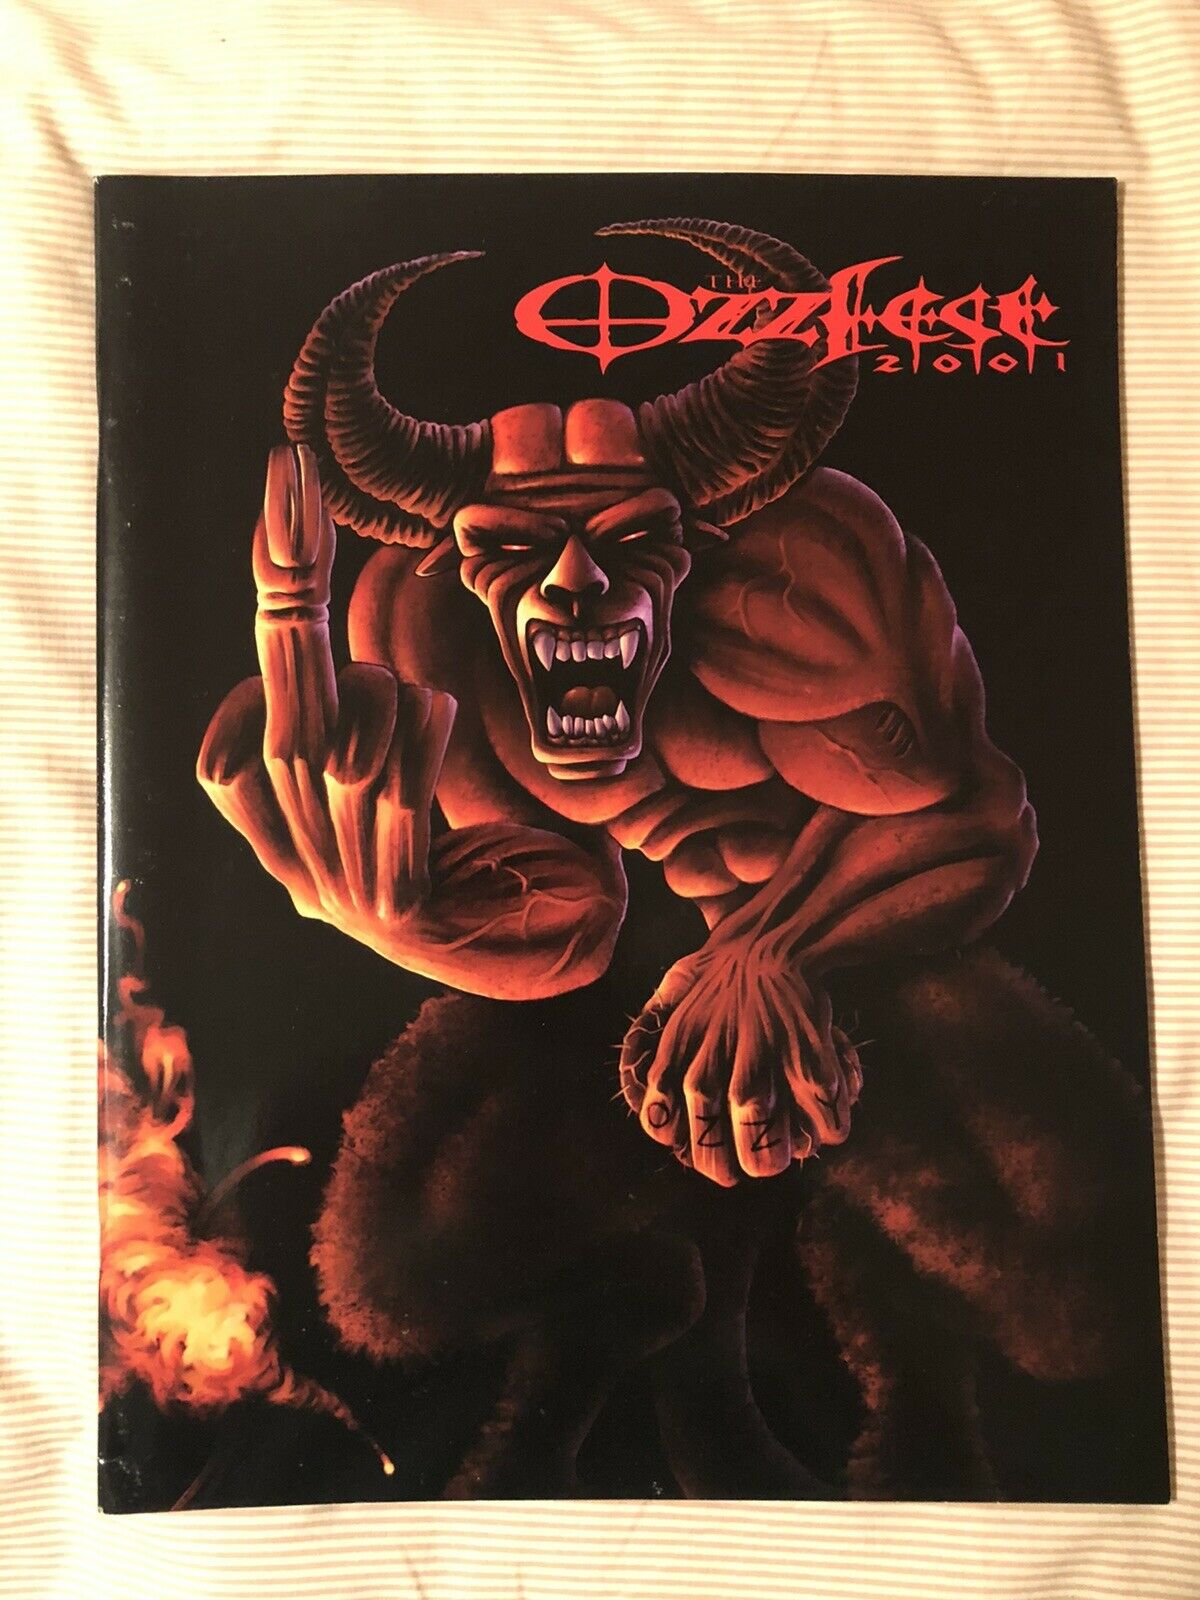 Ozzfest 2001 Rock Concert Tour Program - Ozzy - Black Sabbath Rare